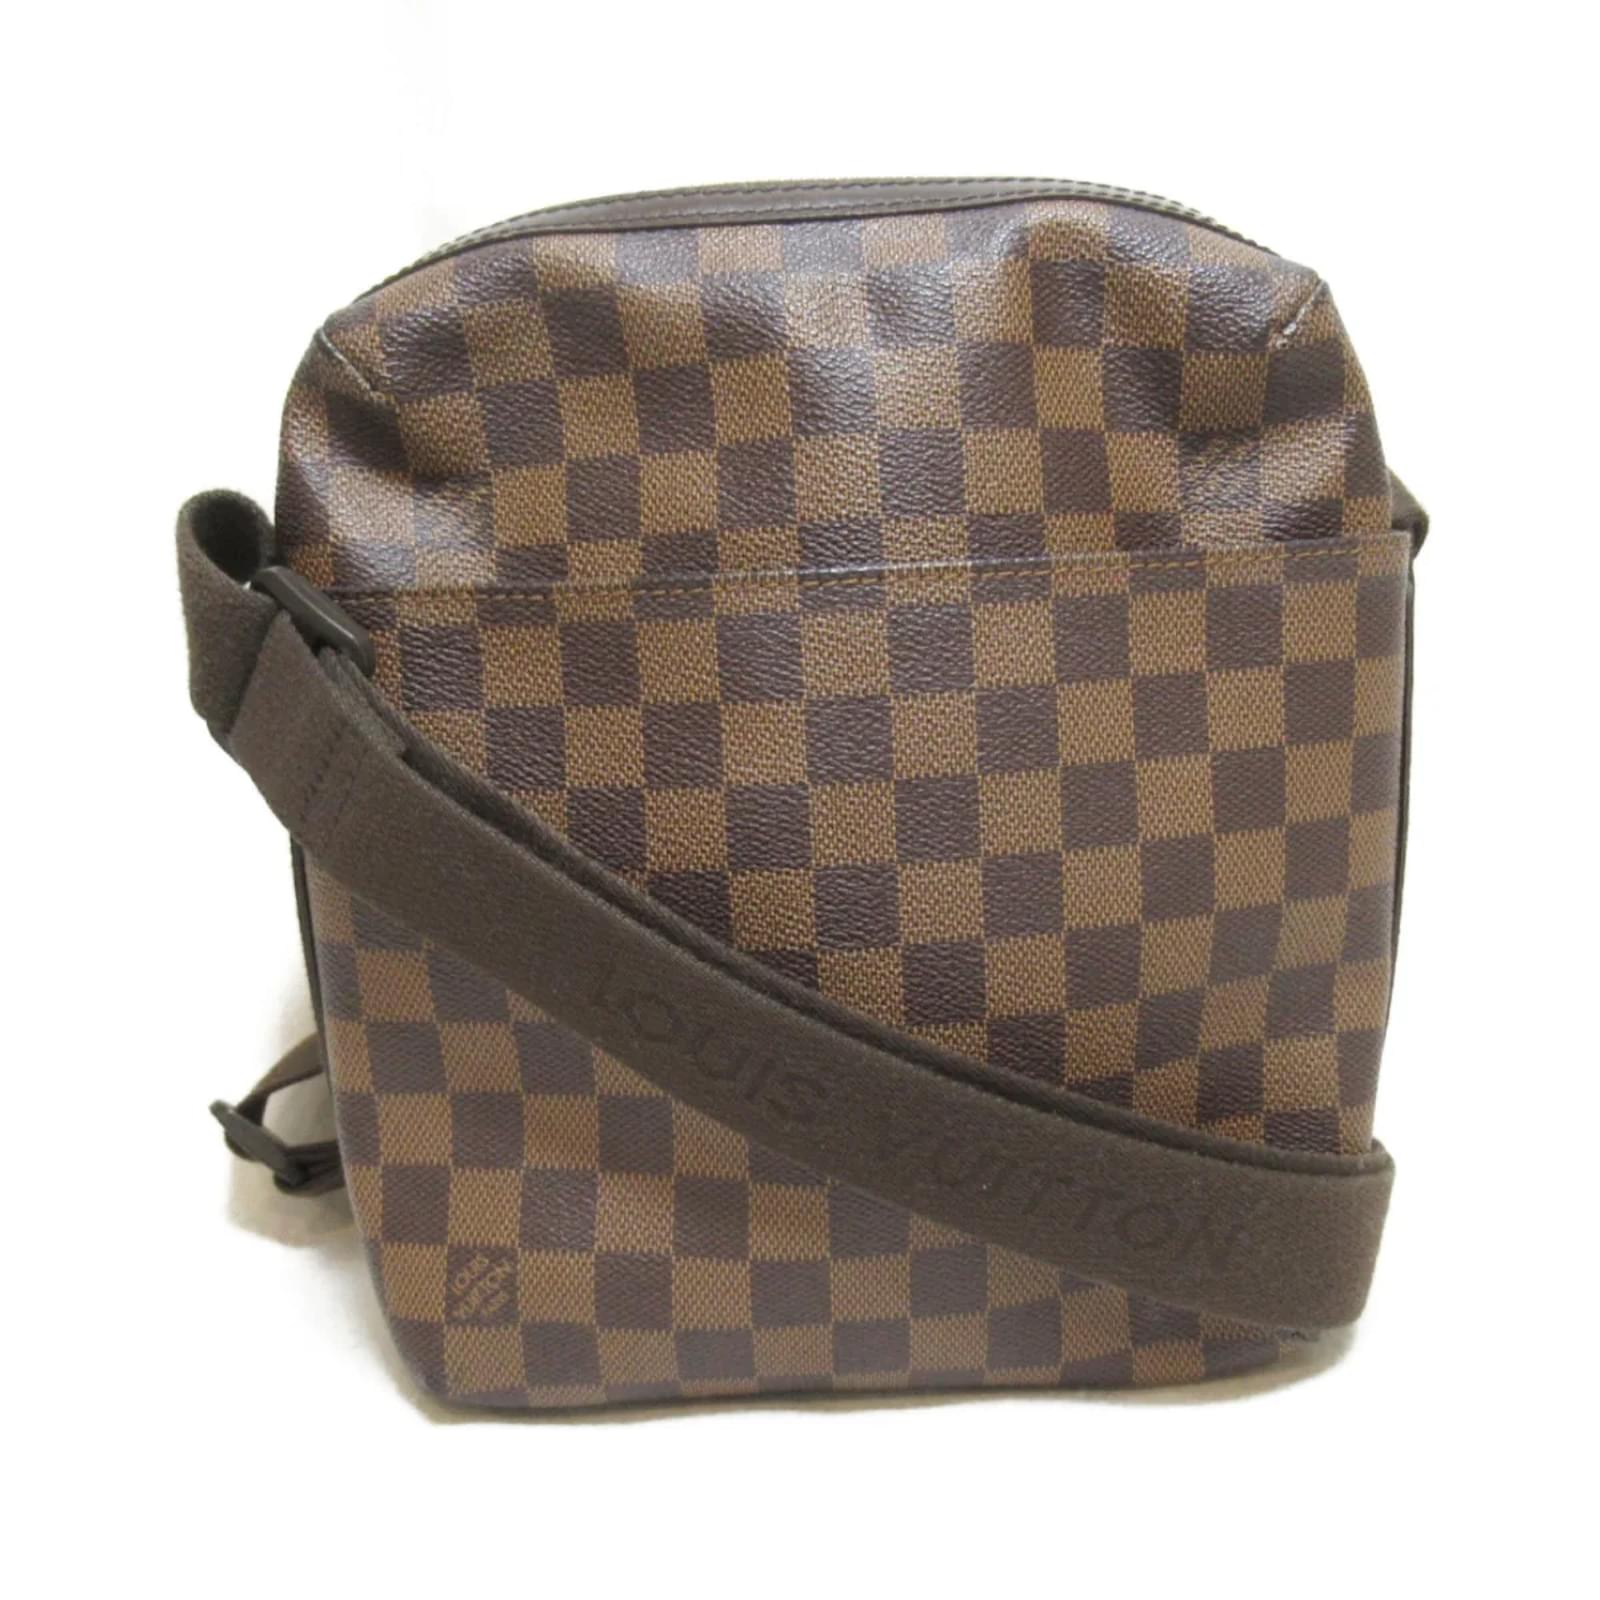 Louis Vuitton, Bags, Louis Vuitton Damier Ebene Trotteur Beaubourg  Crossbody Bag